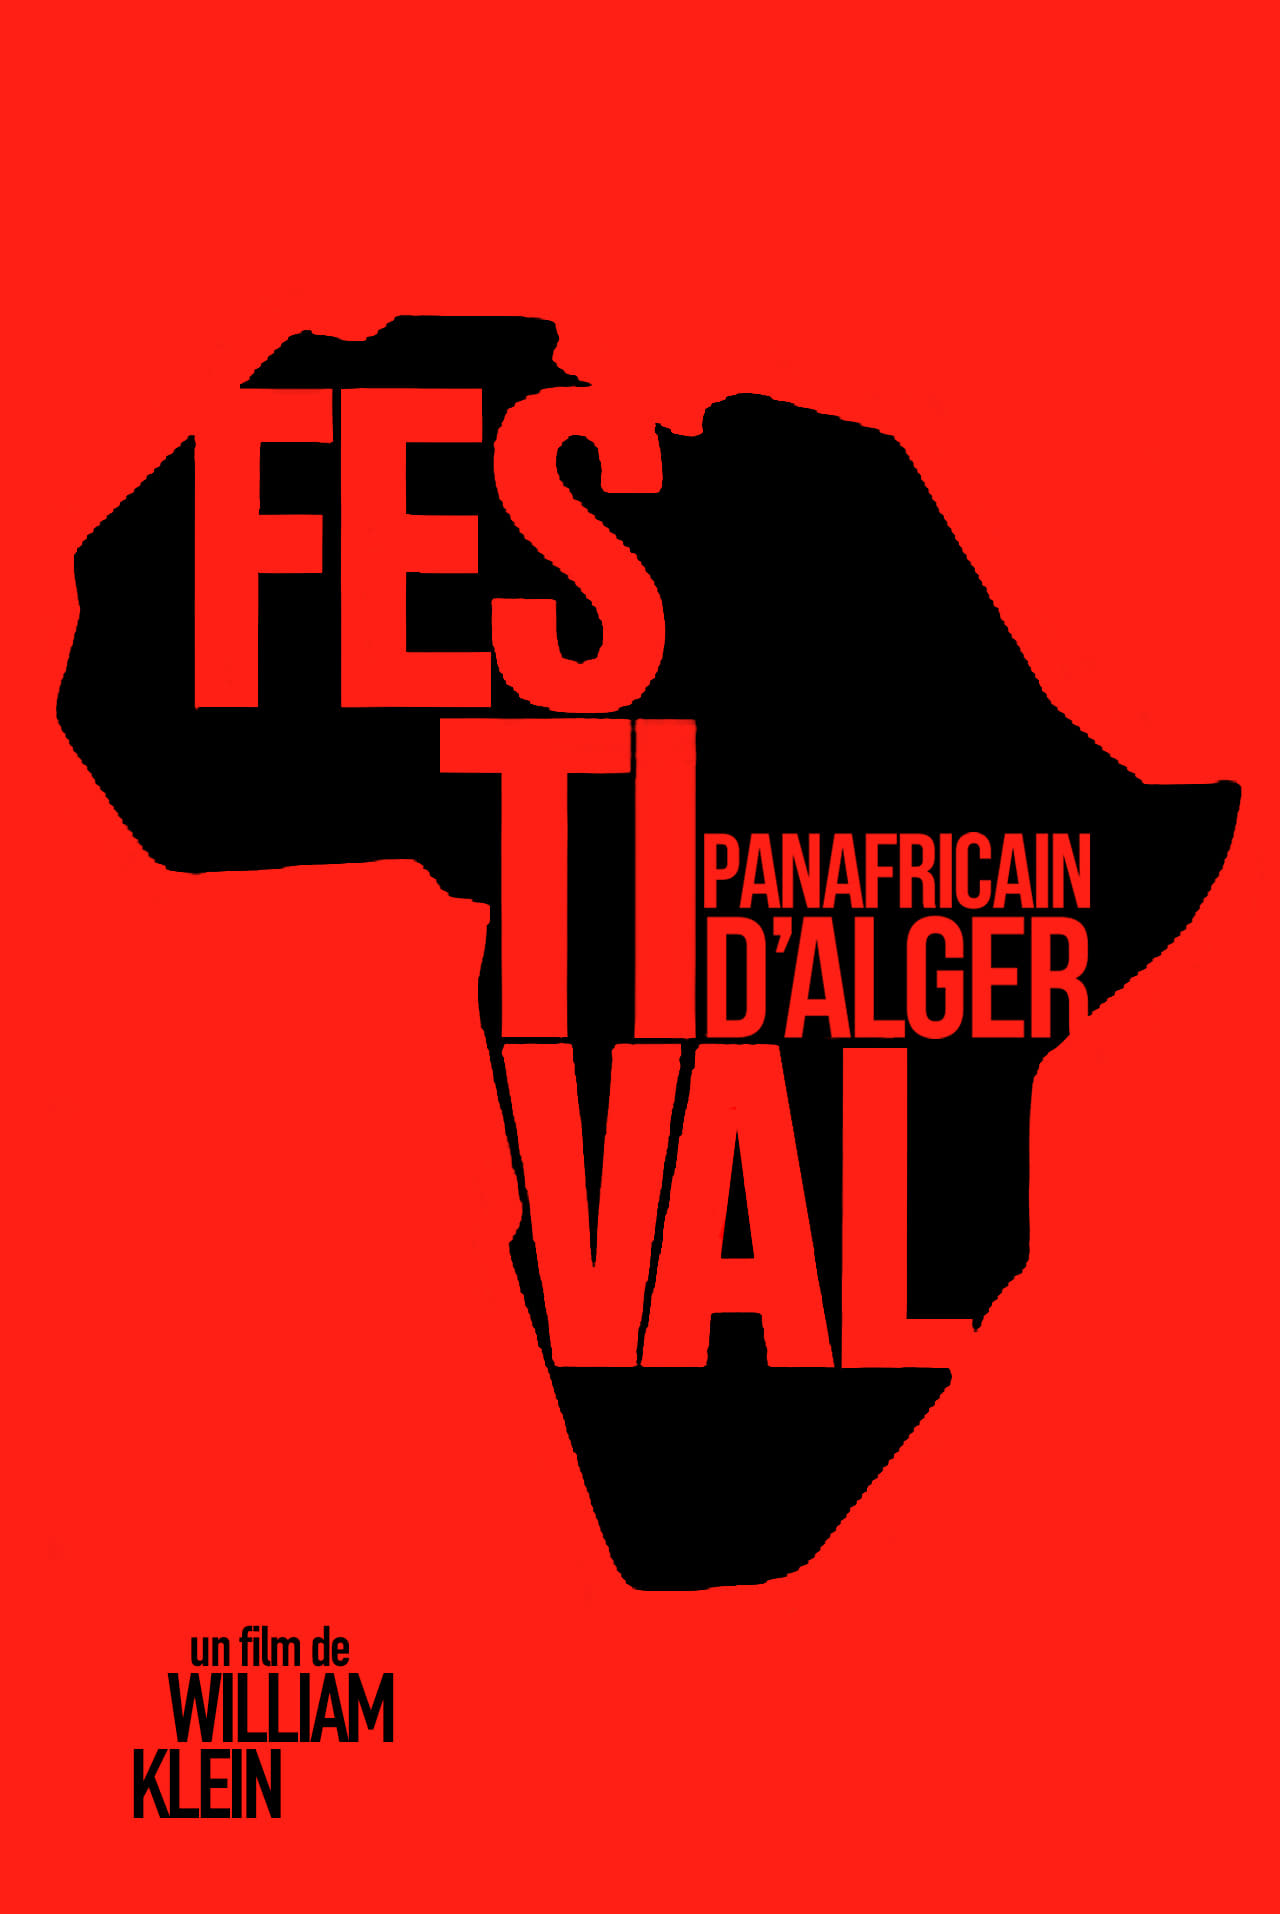 Festival Panafricain d'Alger